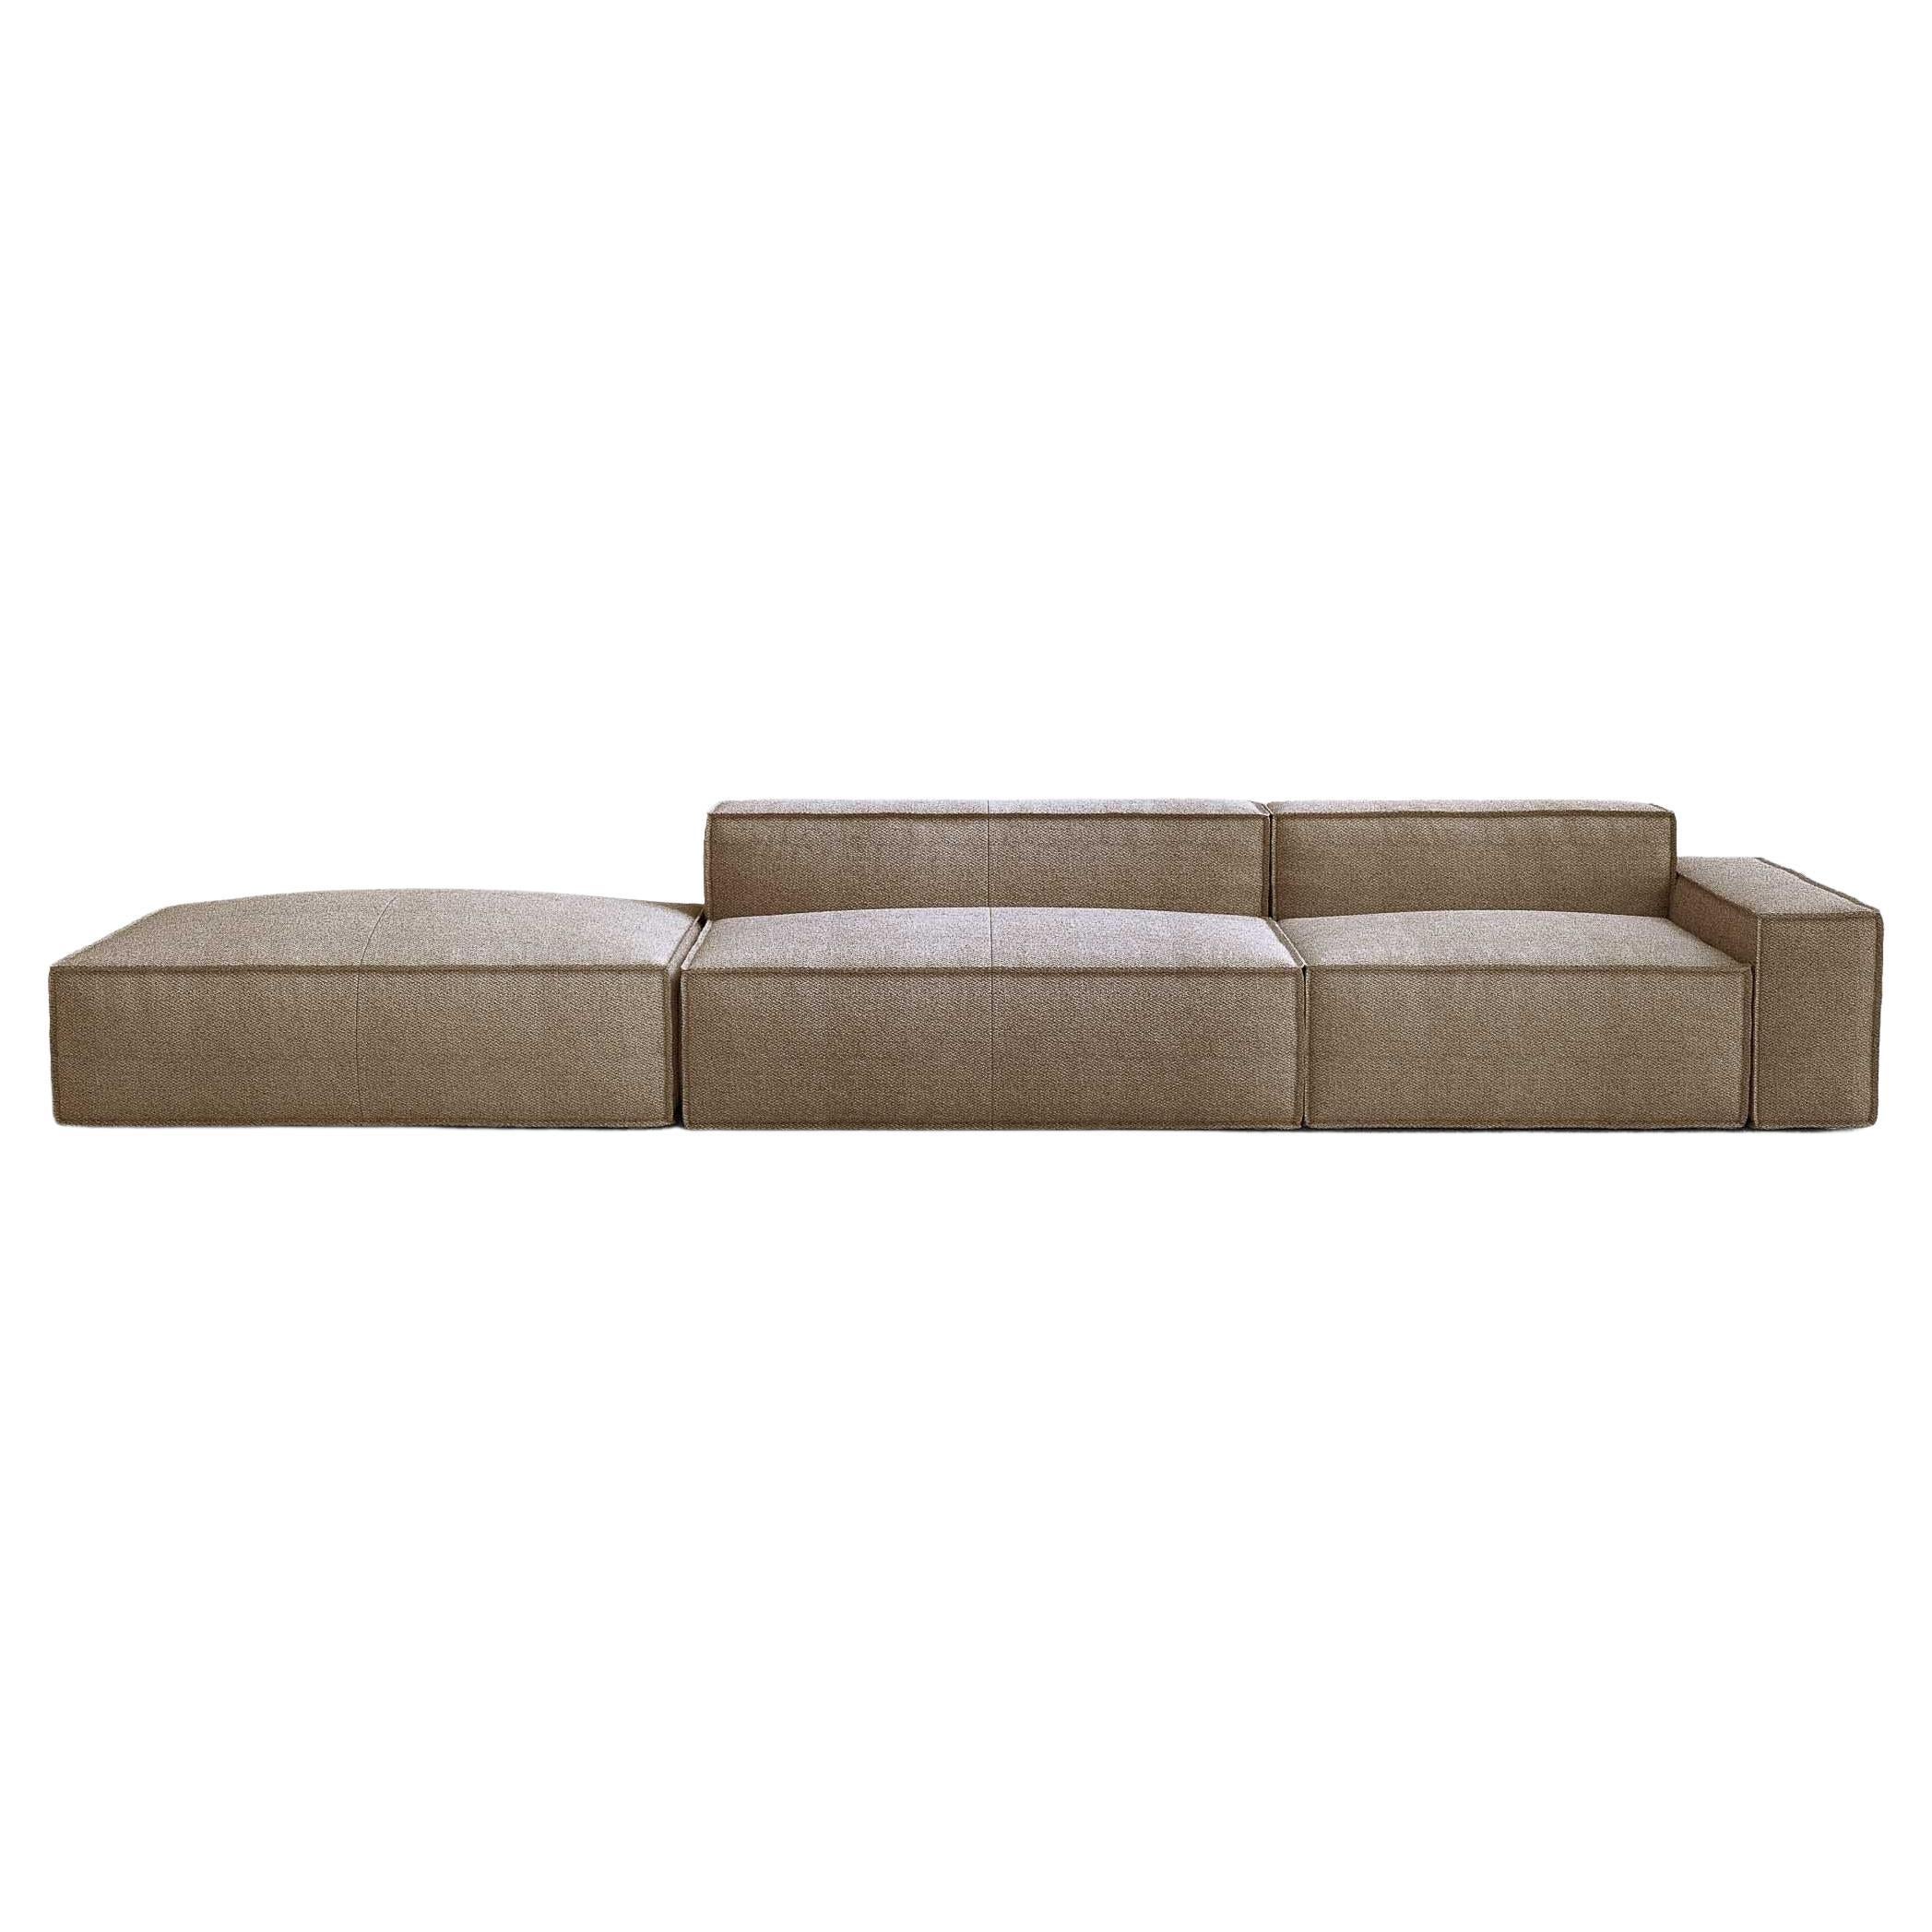 Contemporary Sofa 'Davis' by Amura Lab, Brera 850 - Brown 04 For Sale